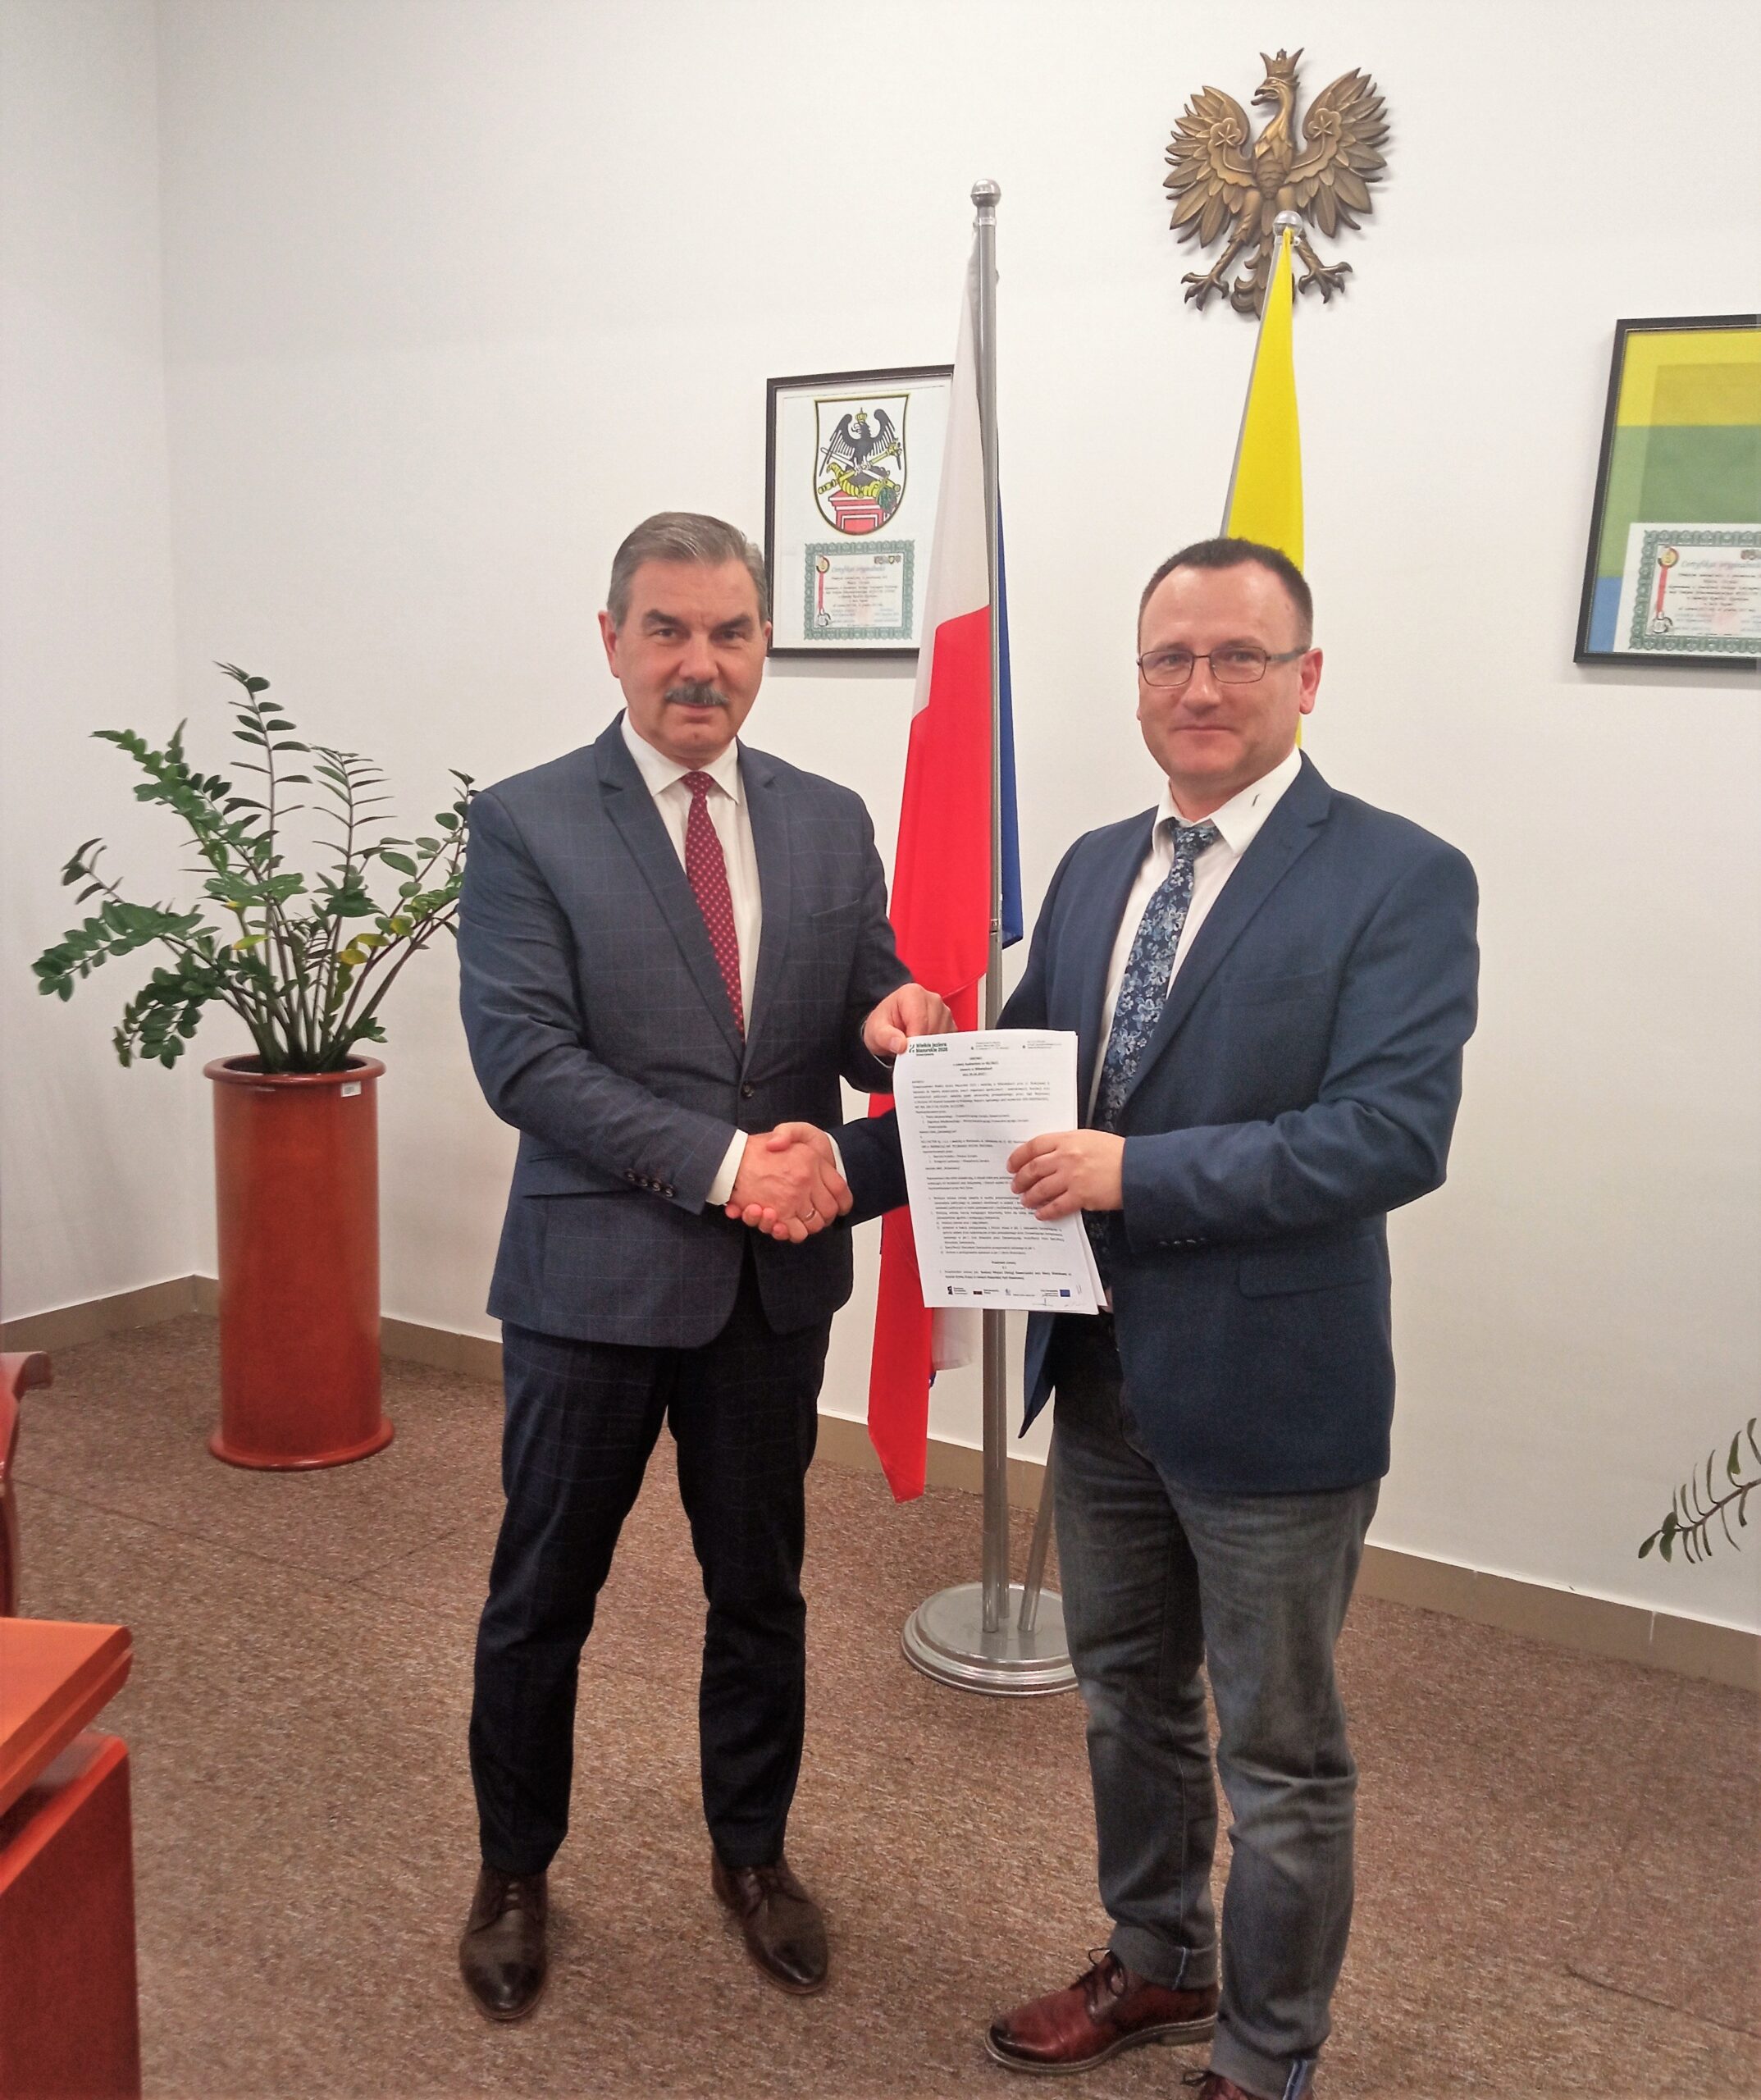 Podpisano kolejną umowę w projekcie Mazurska Pętla Rowerowa.